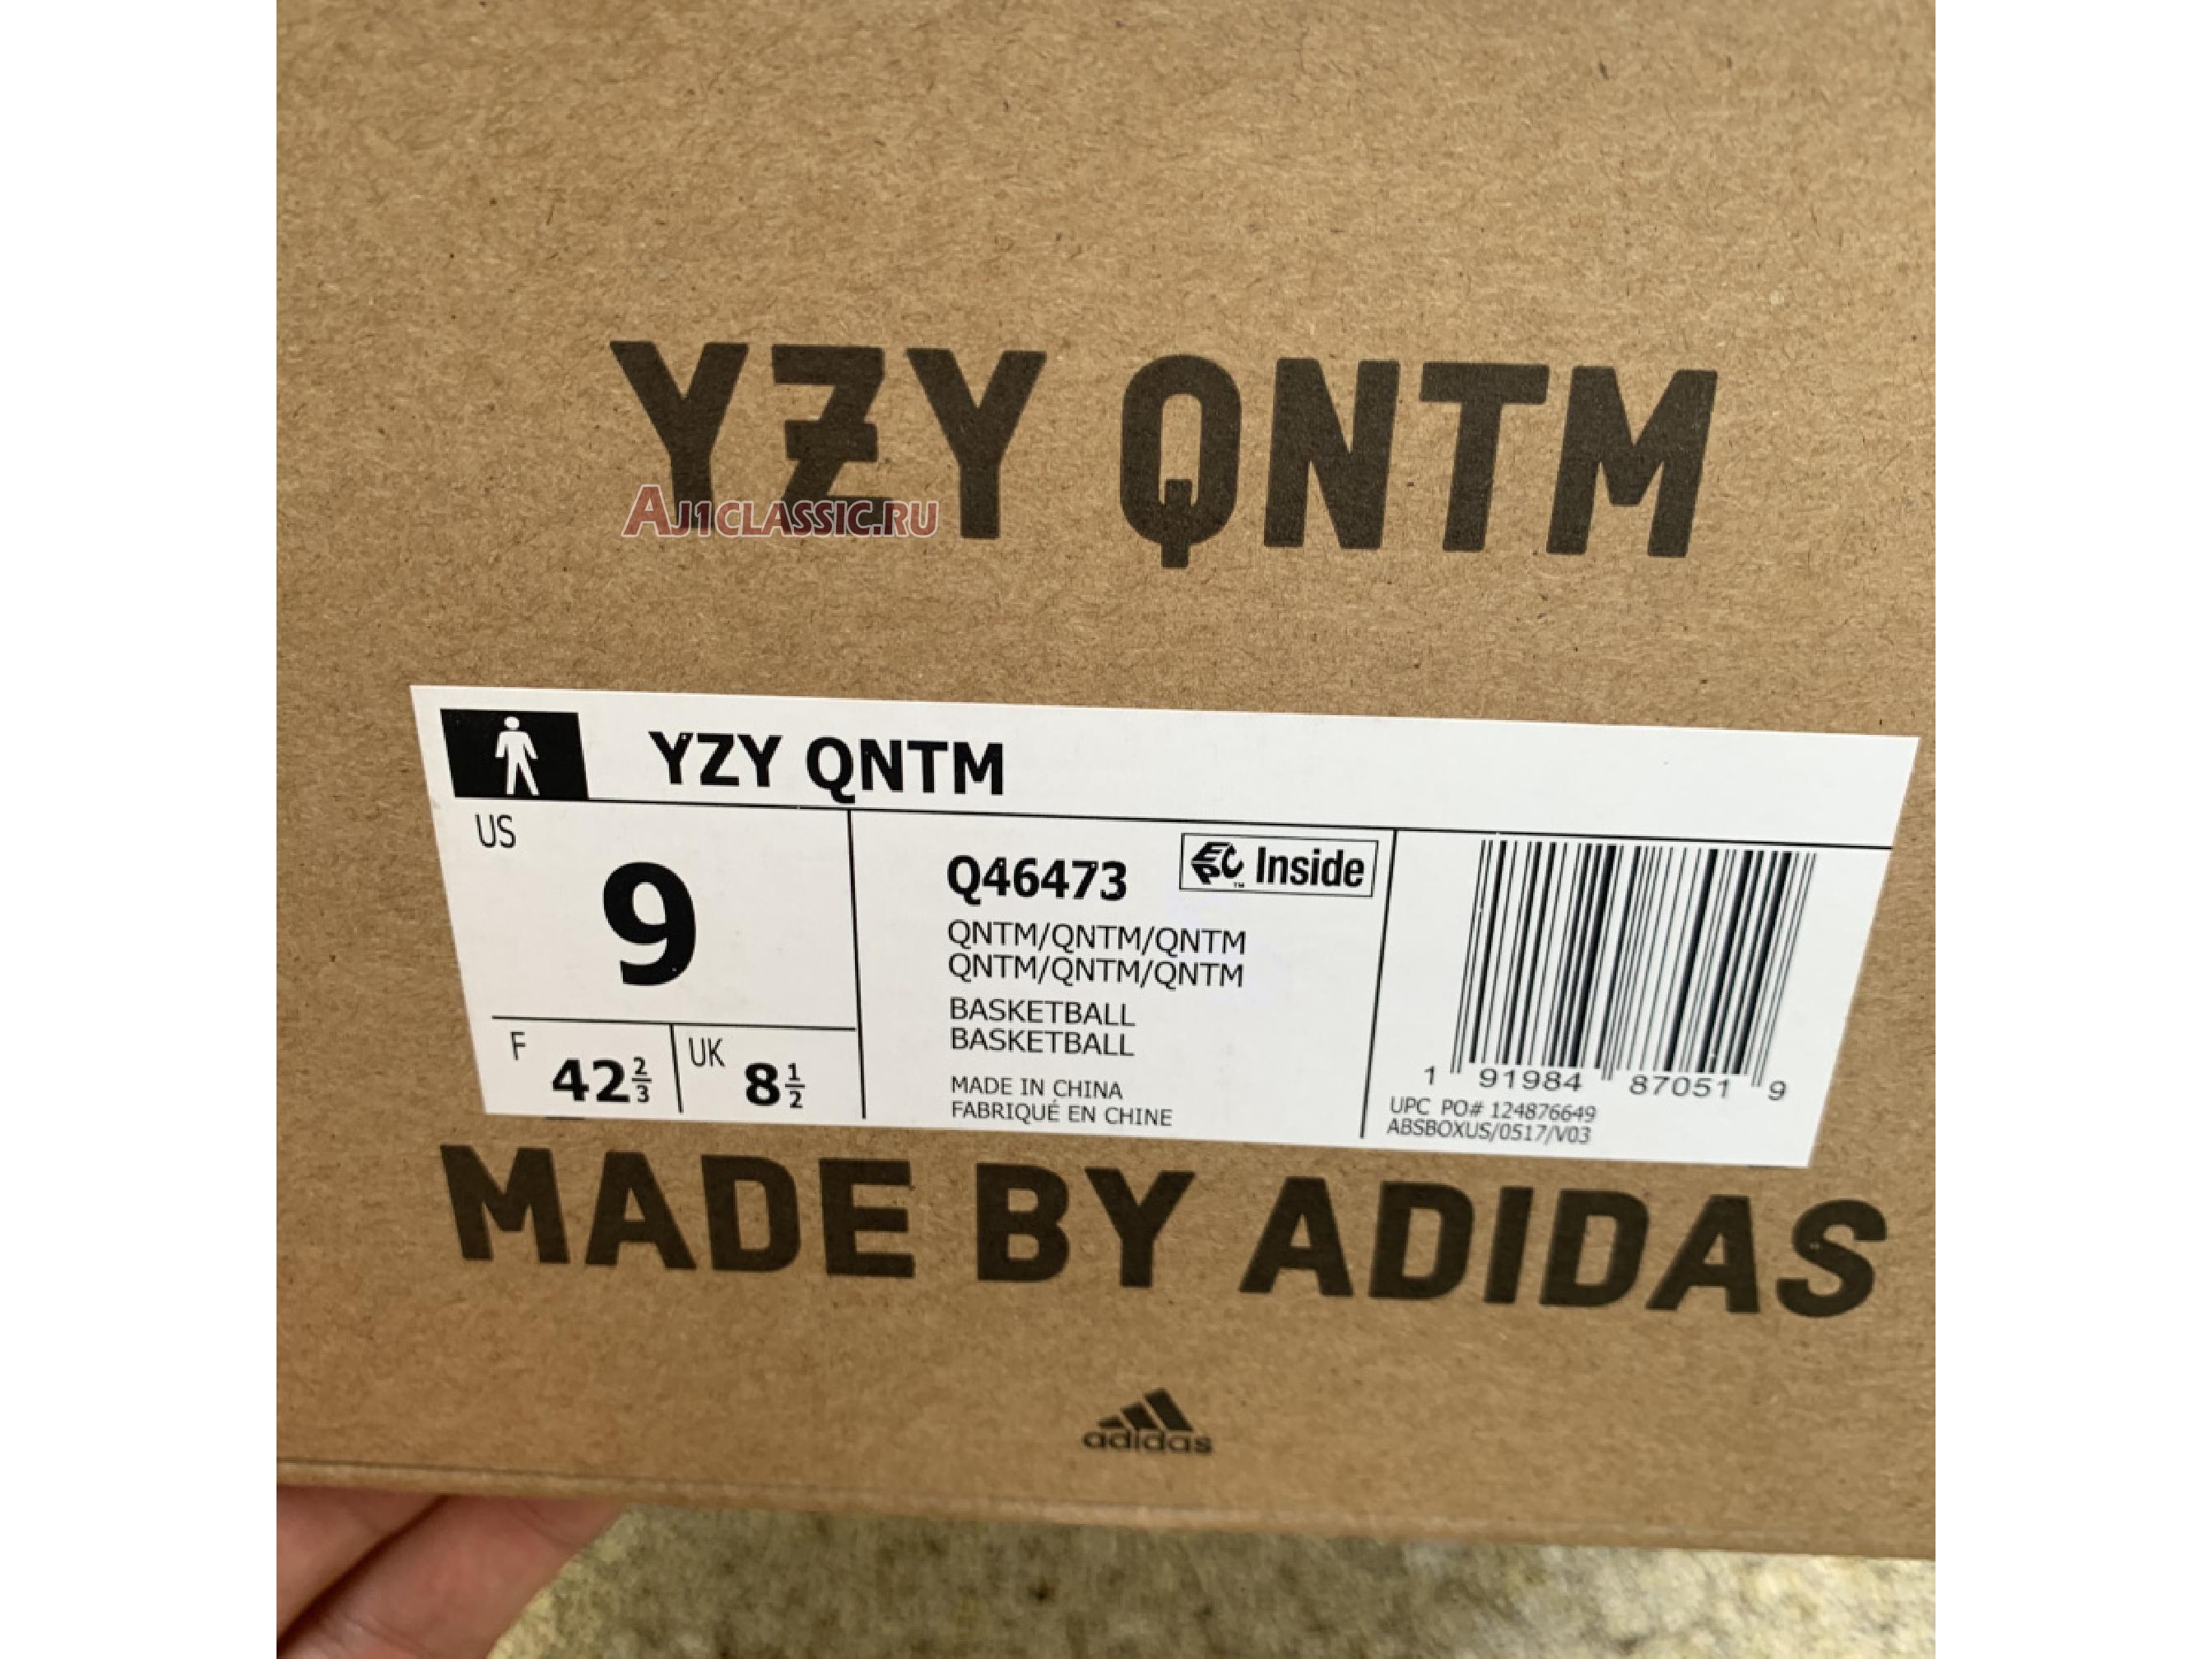 Adidas Yeezy QNTM Quantum Basketball Q46473